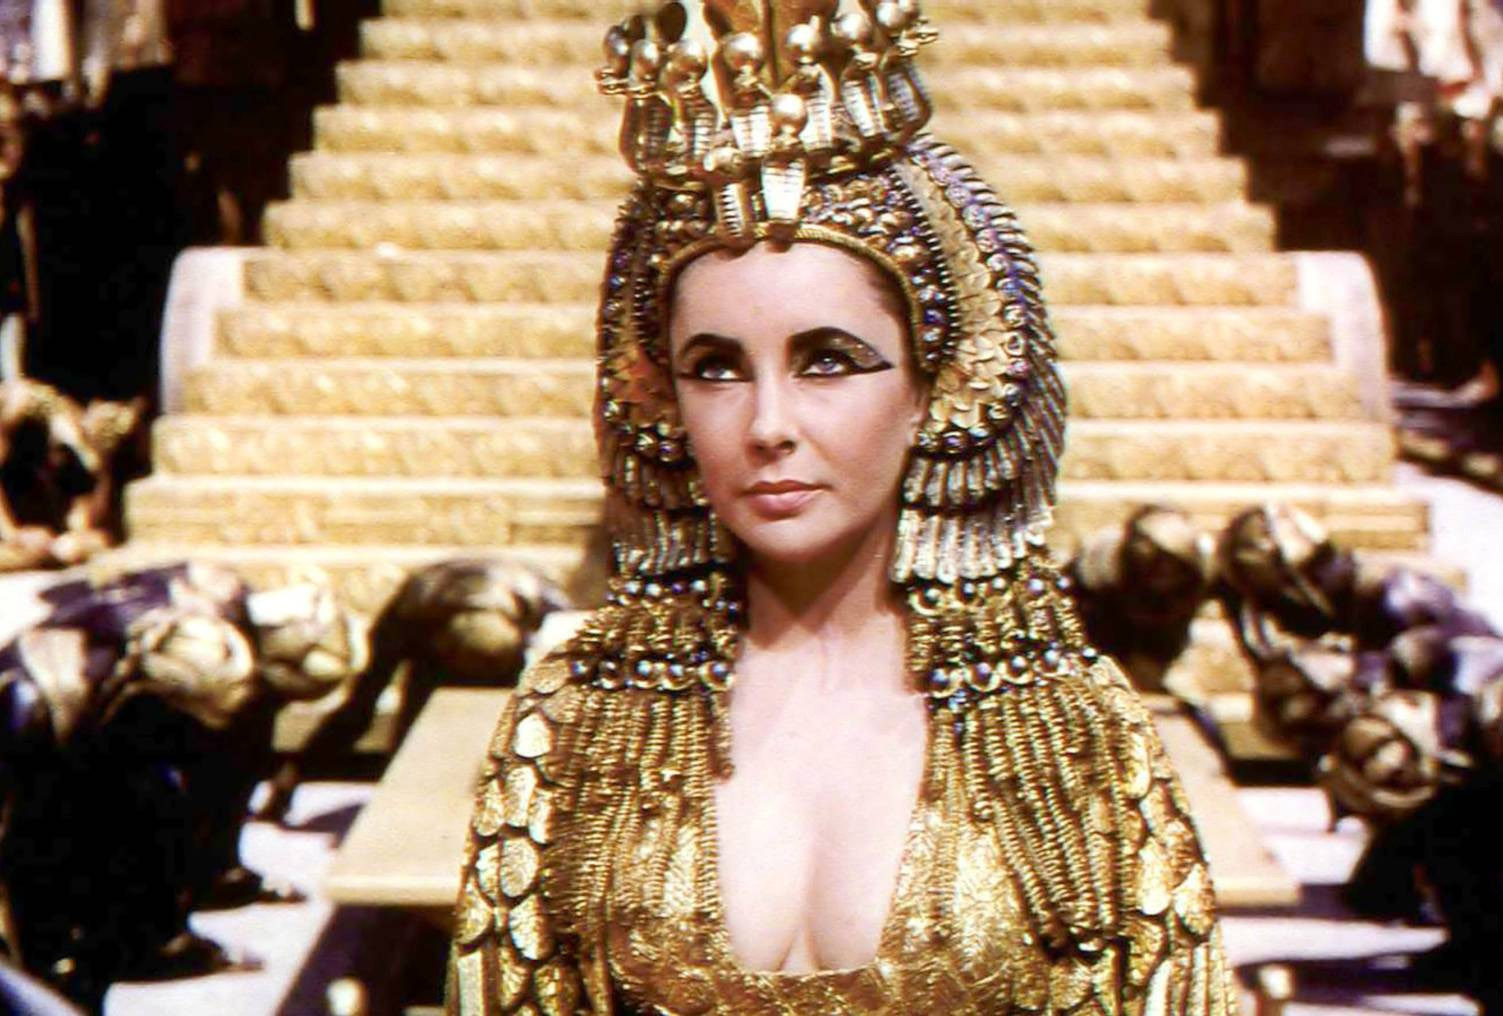 17. Cleopatra